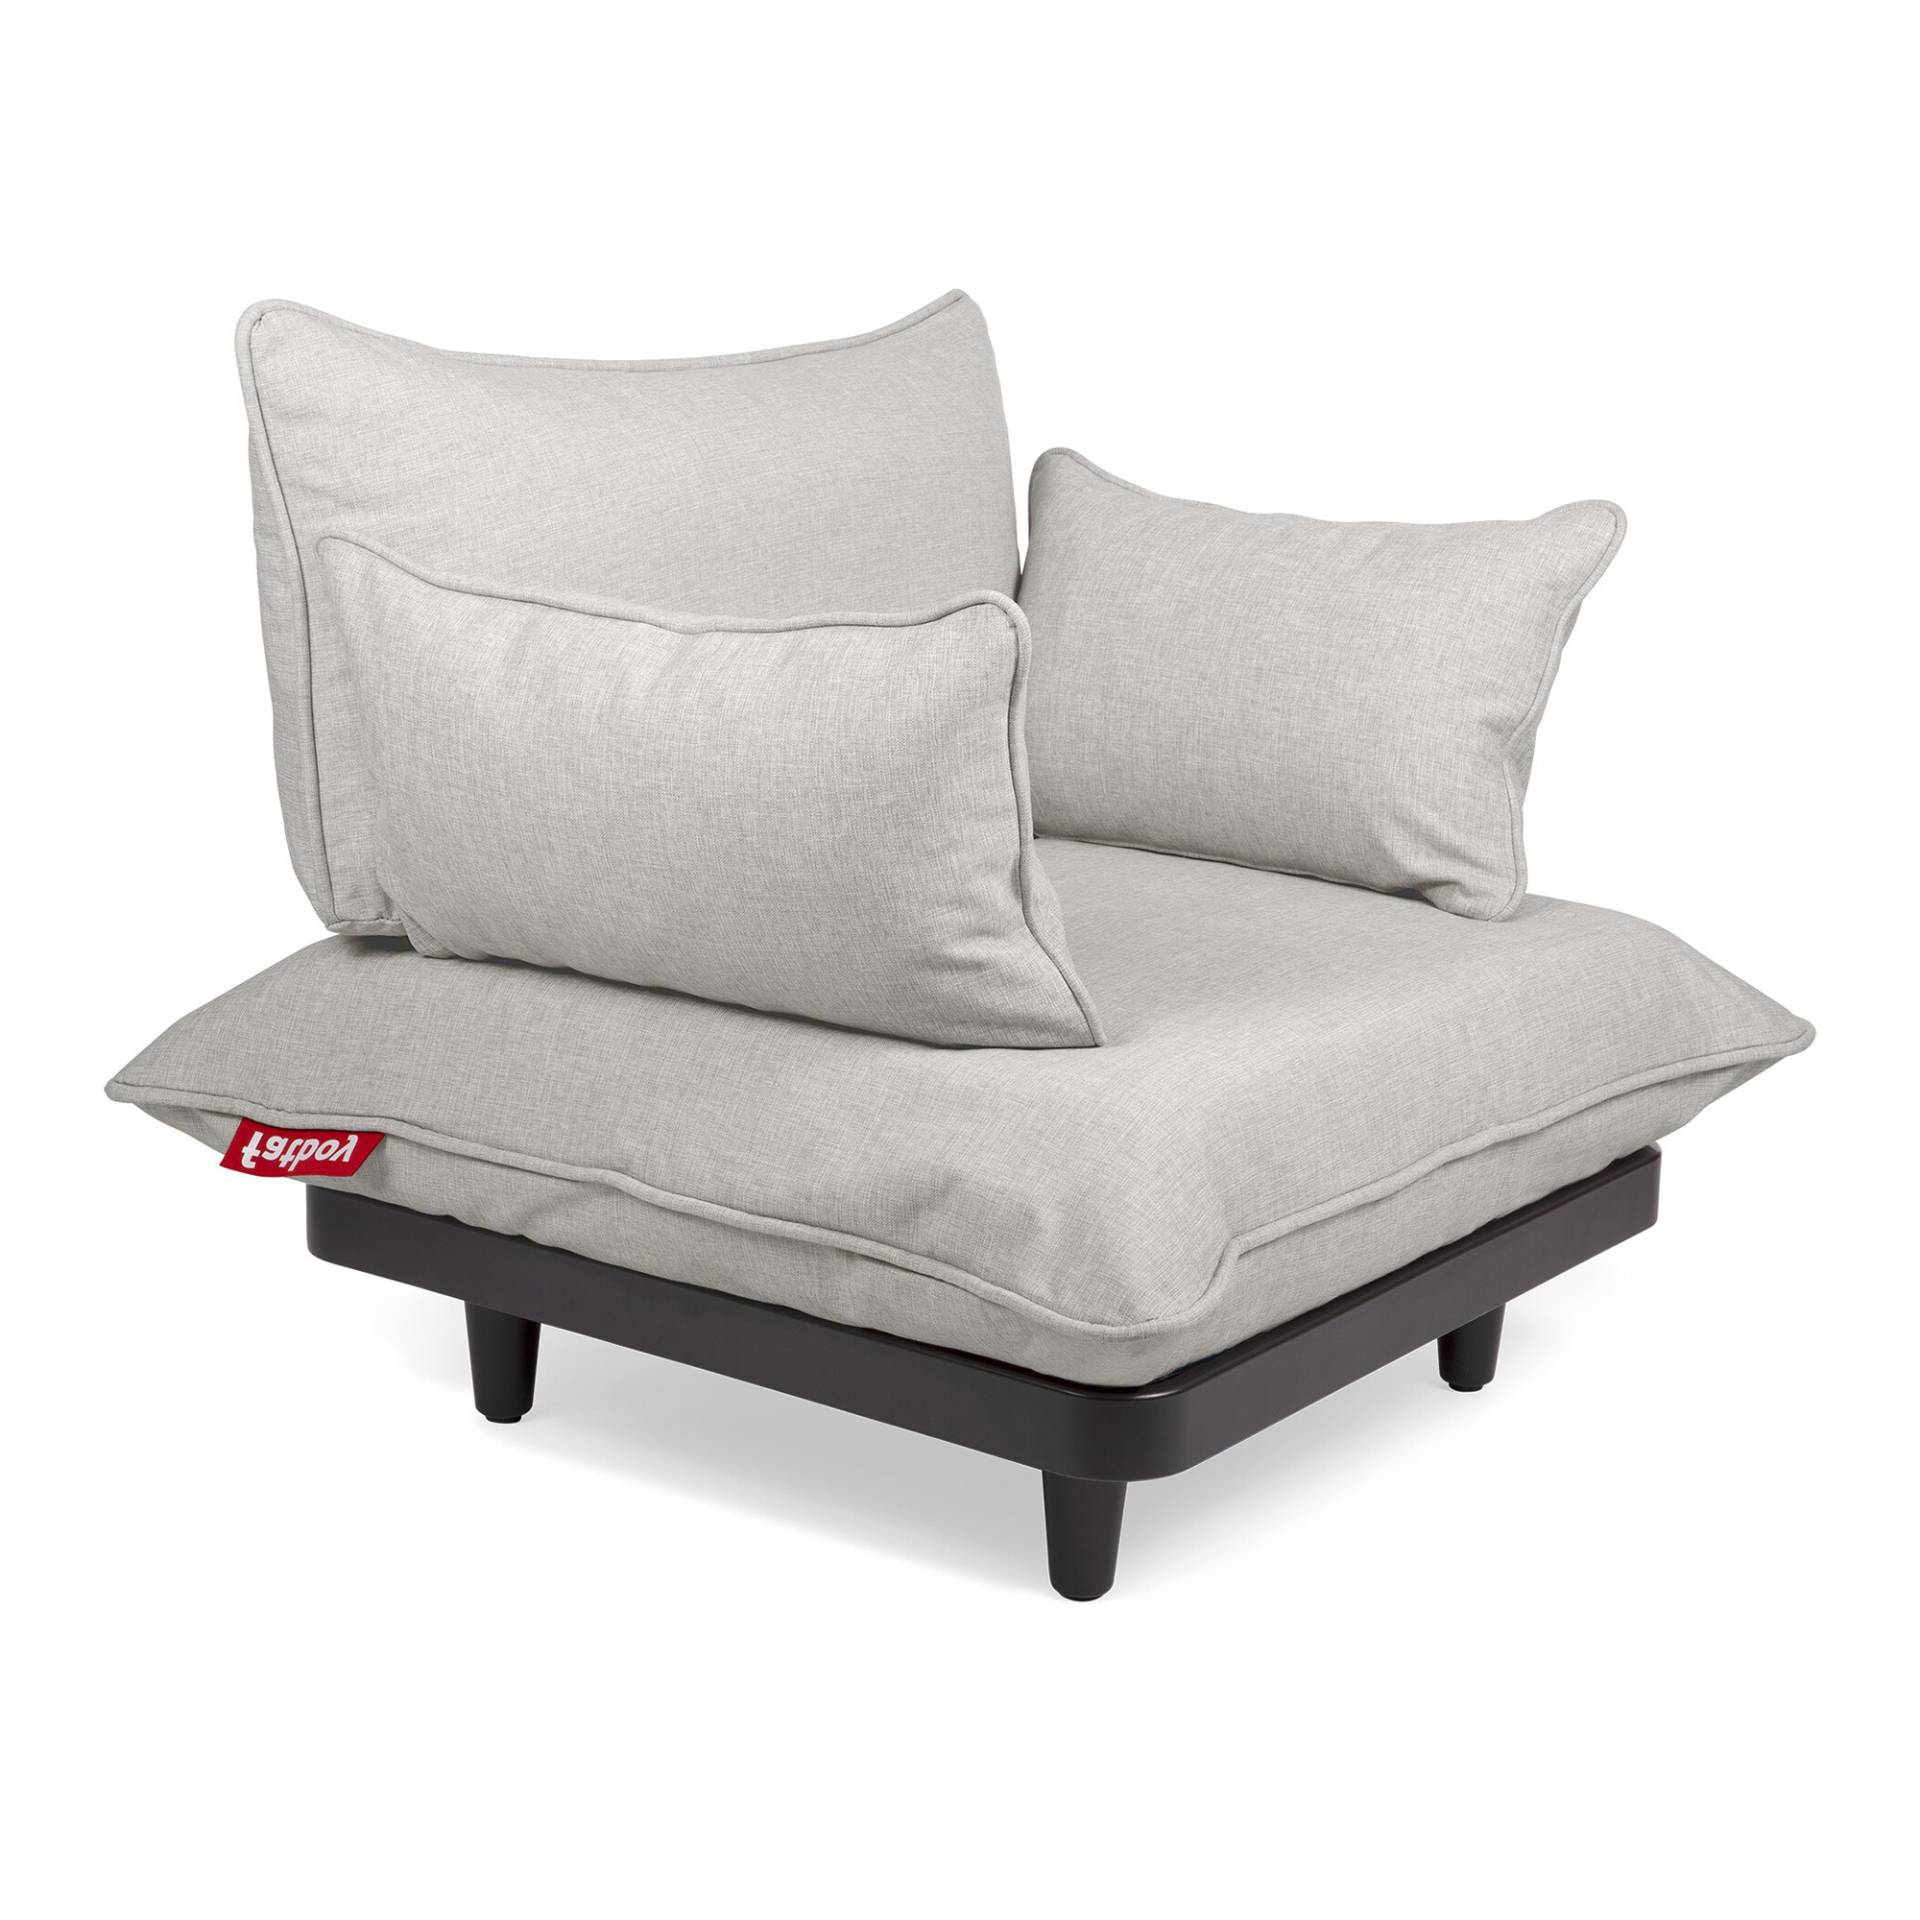 Fatboy - Paletti Outdoor Lounge Chair - nebel/Axalta pulverbeschichtet/LxBxH 90x90x45cm von Fatboy